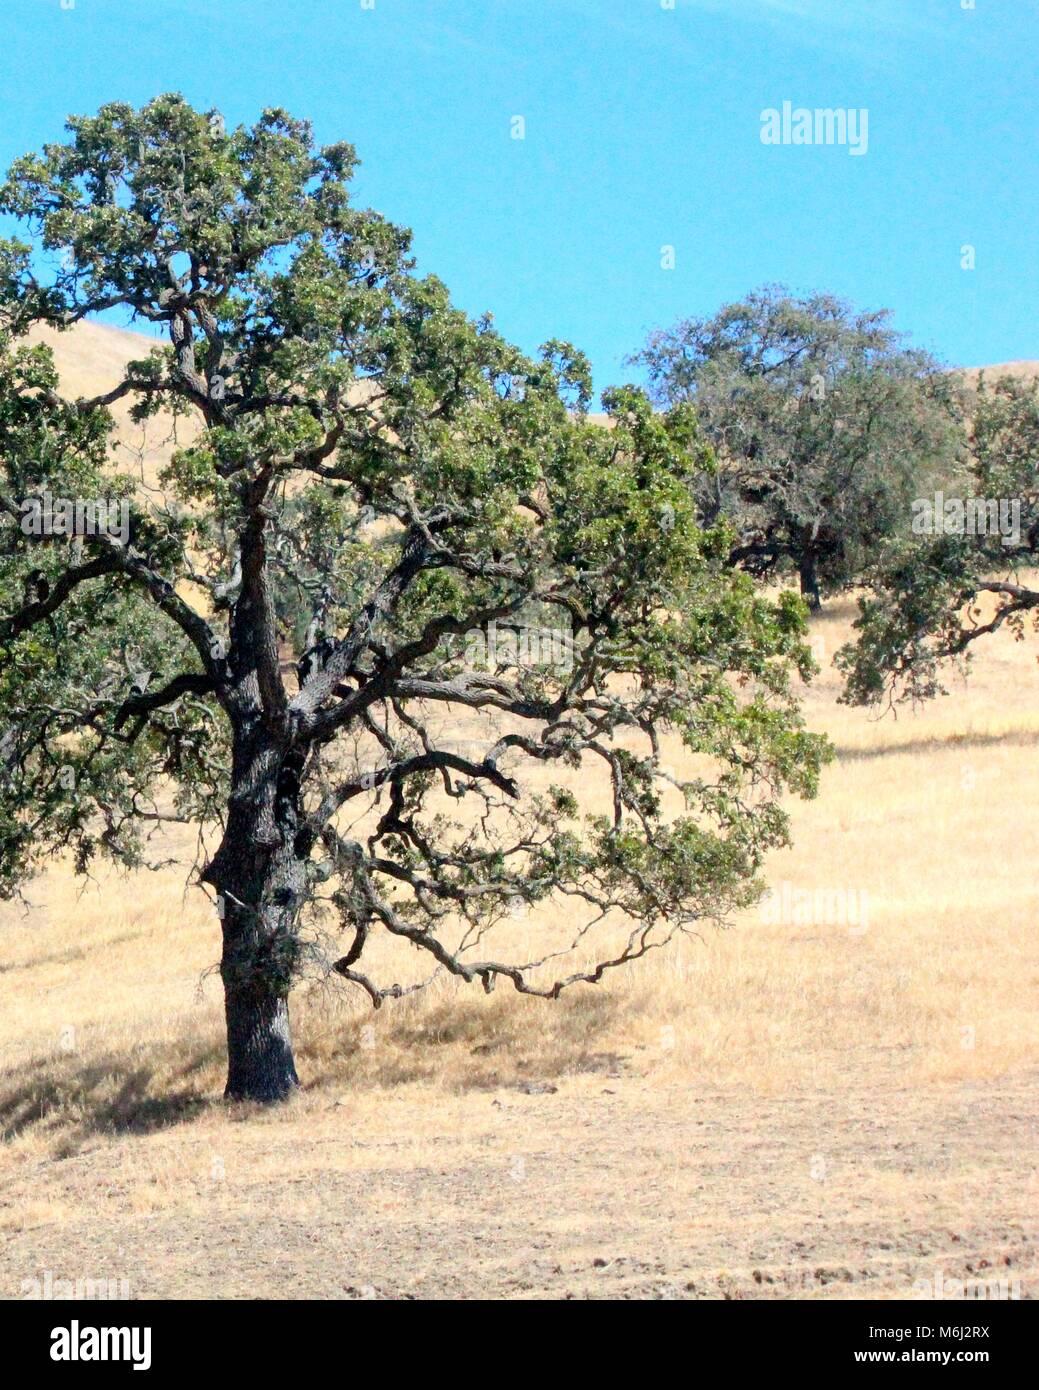 California Live Oak tree dans un champ d'or Banque D'Images